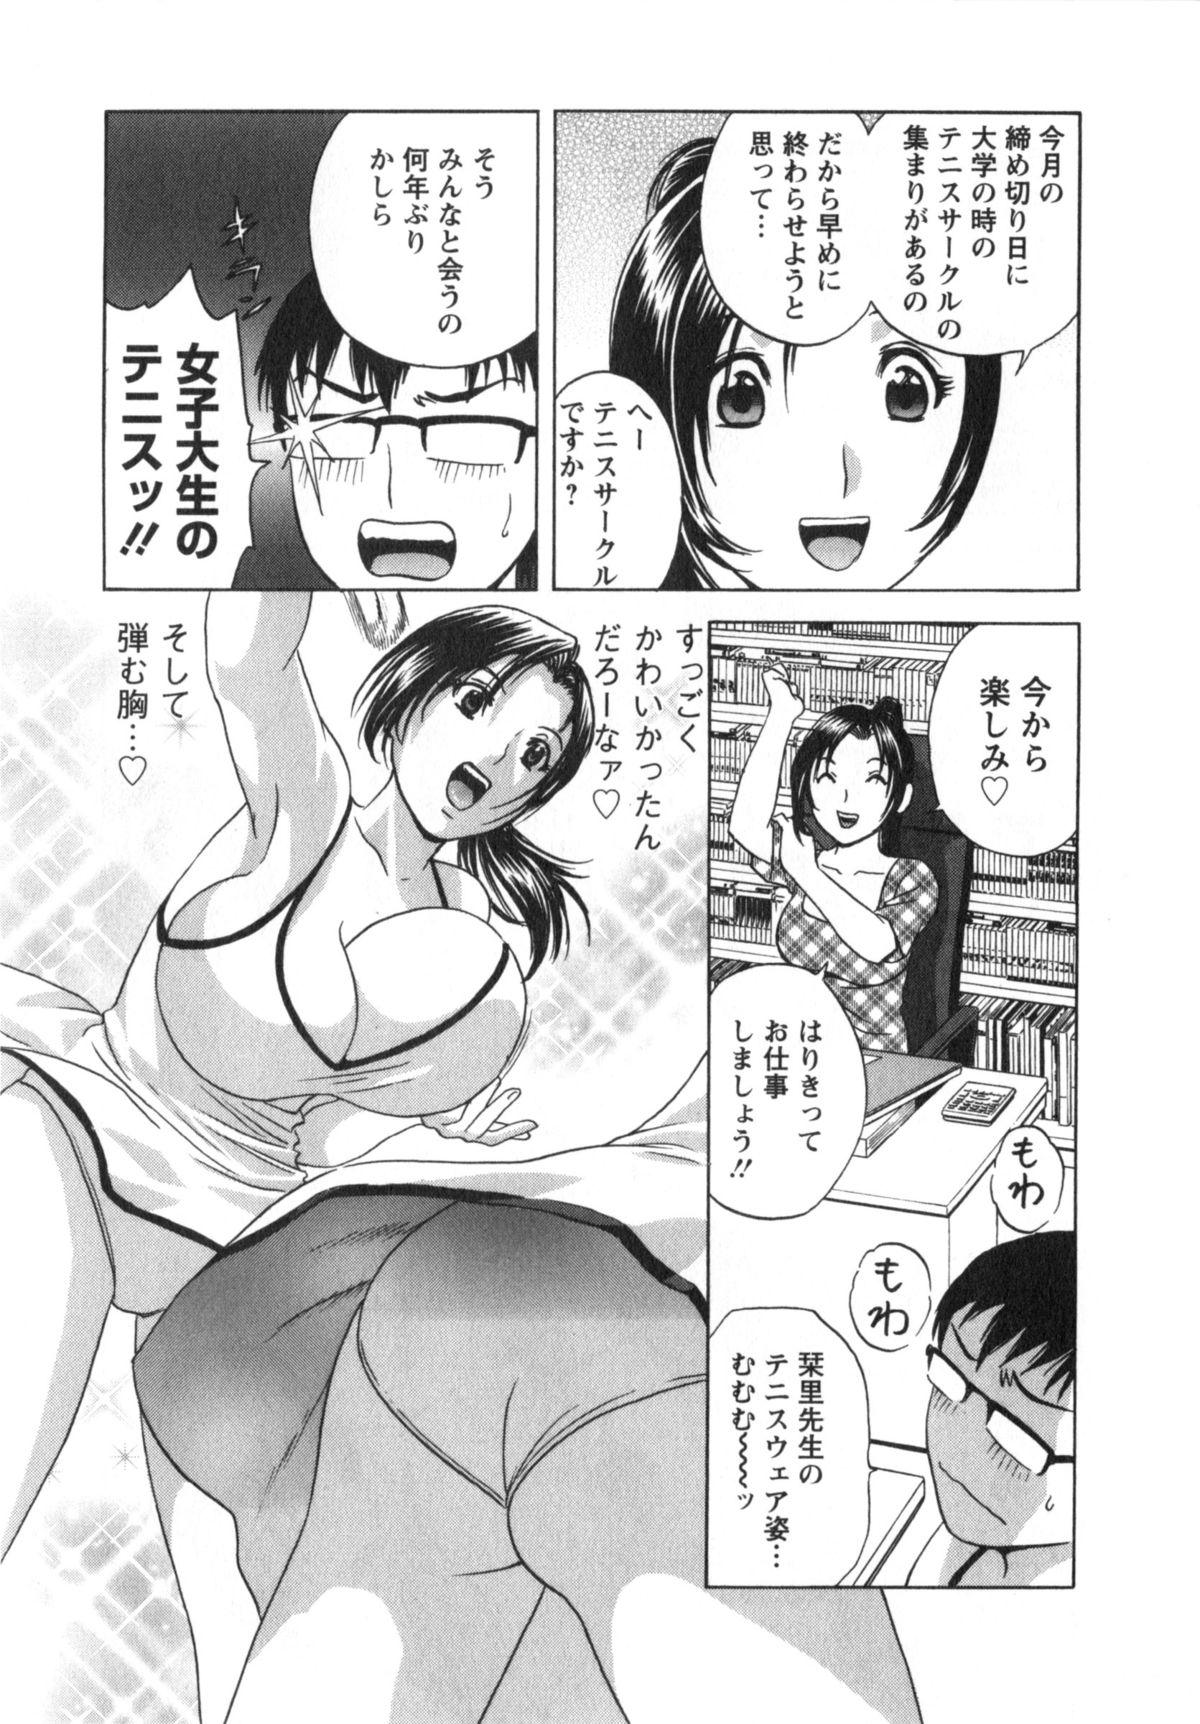 Manga no youna Hitozuma to no Hibi - Days with Married Women such as Comics. 83